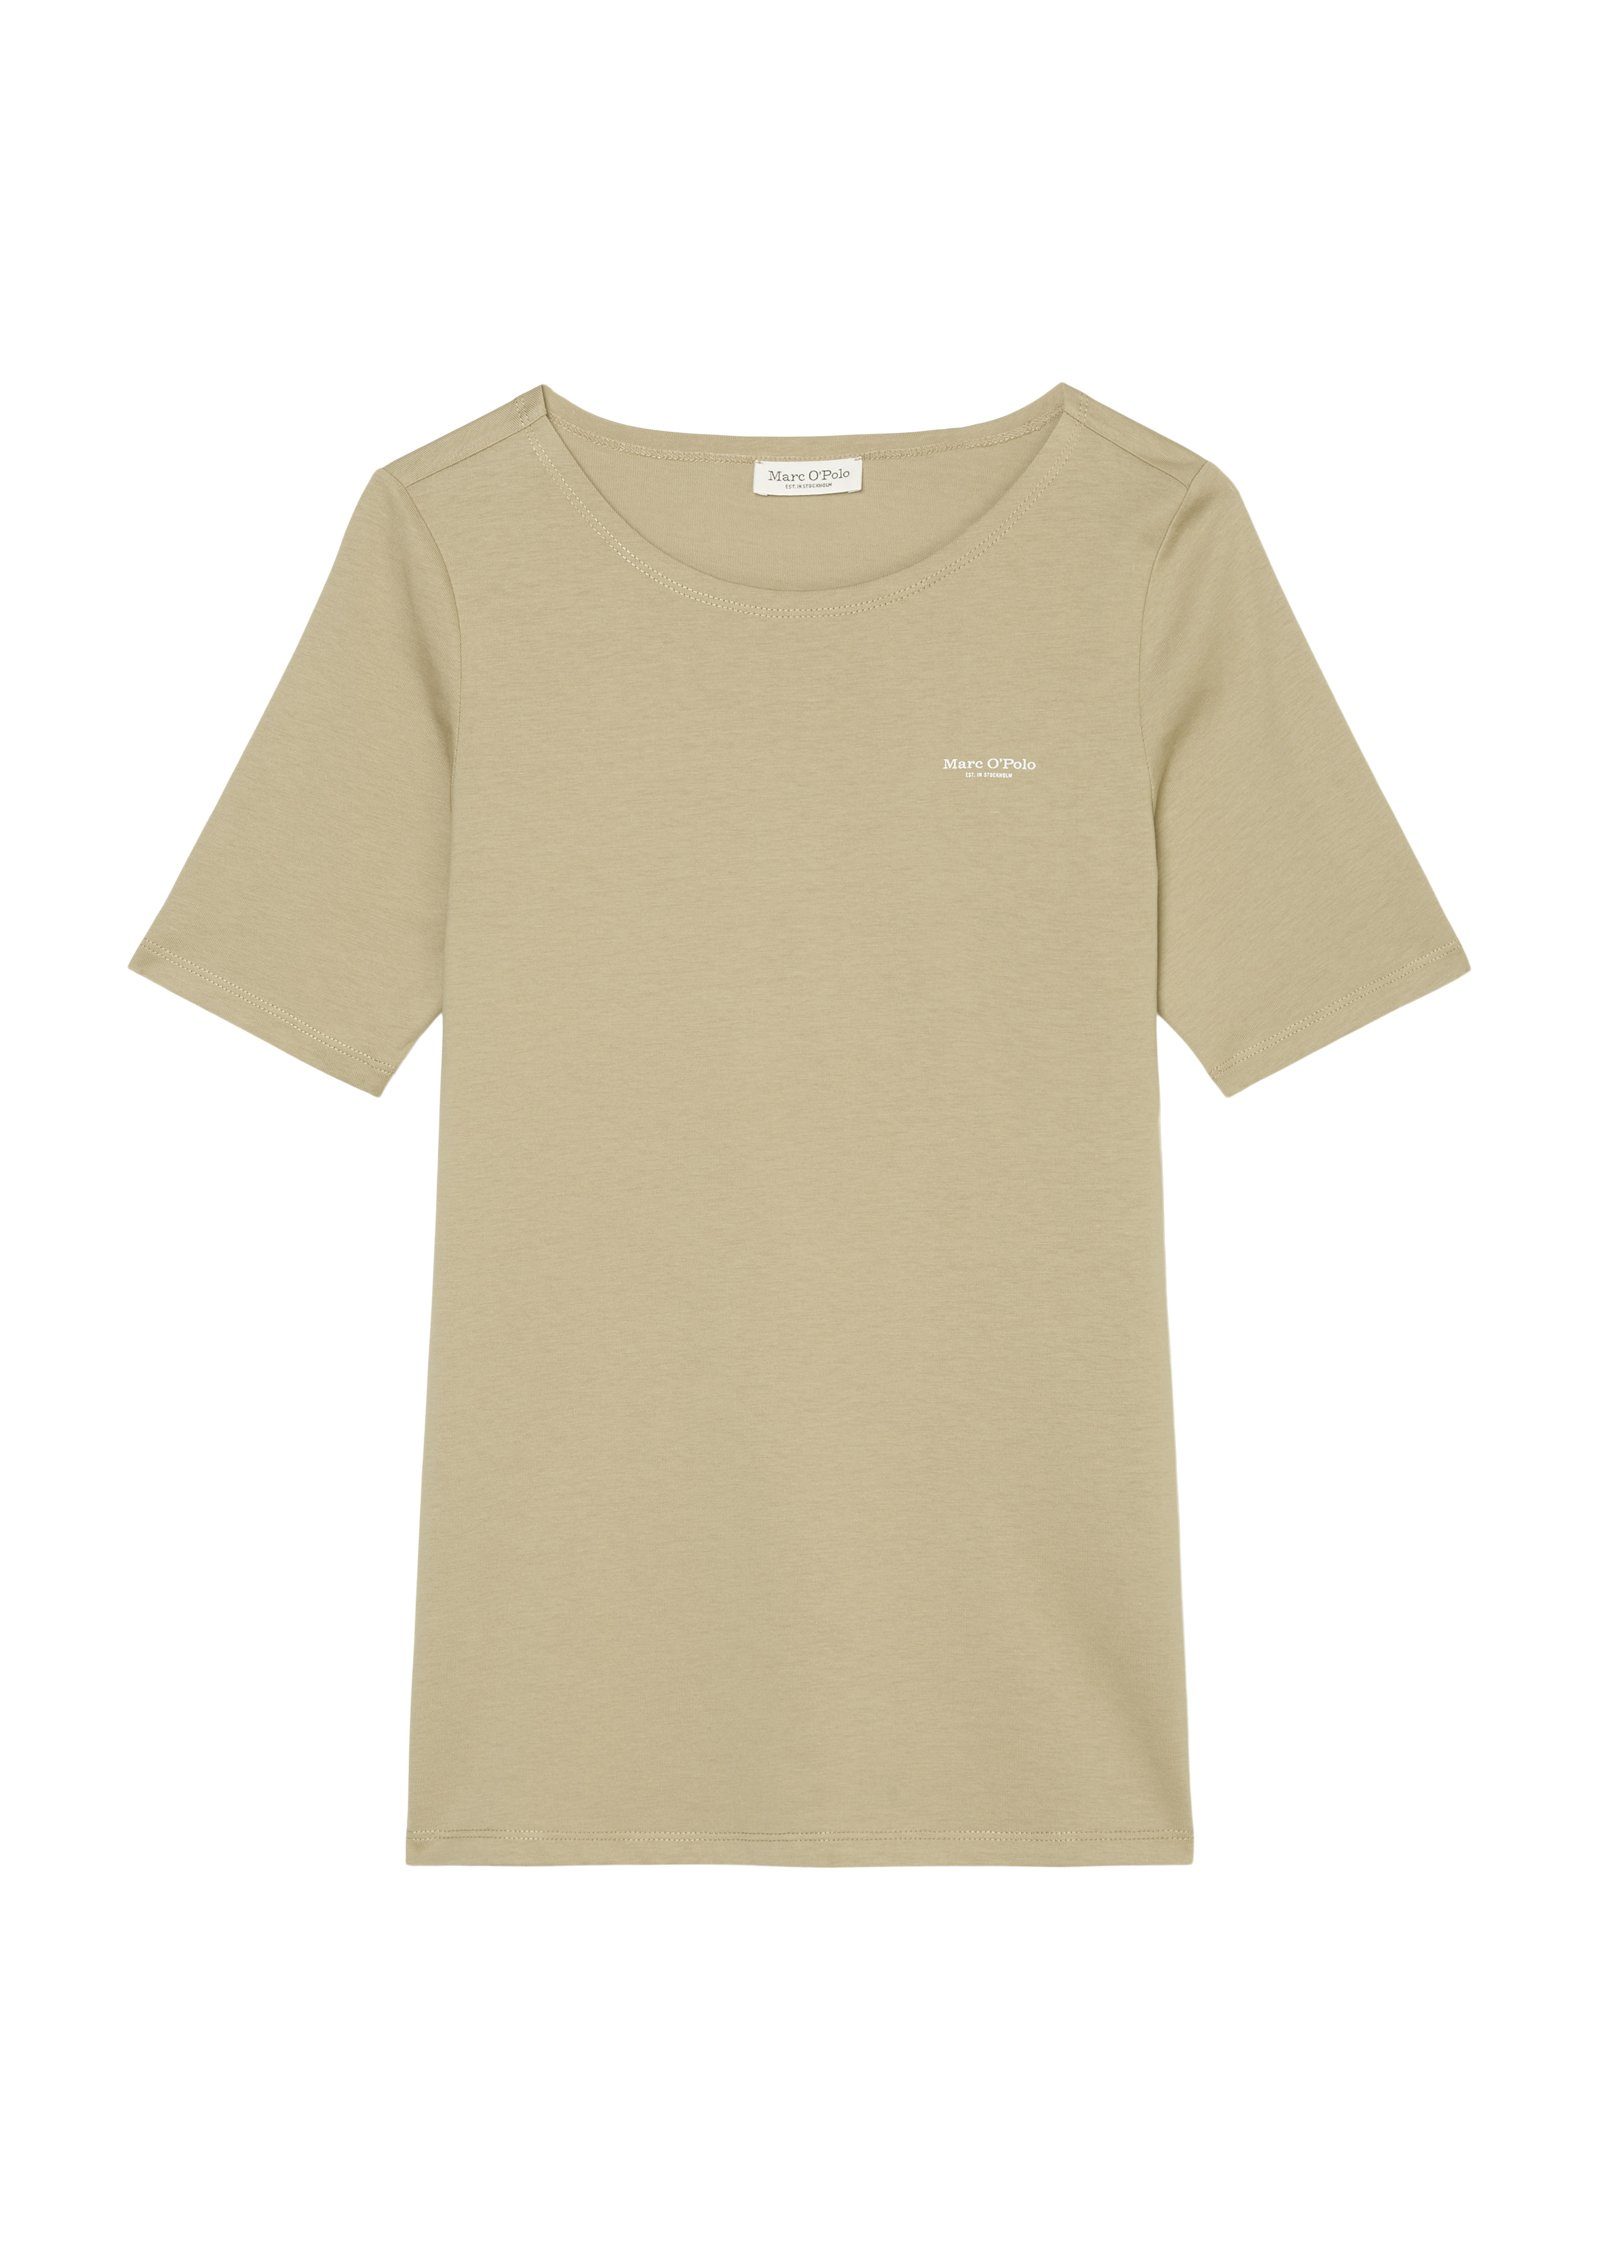 T-Shirt sand mit neck, T-shirt, auf Marc Logo logo-print round O'Polo der Brust short-sleeve, nordic kleinem